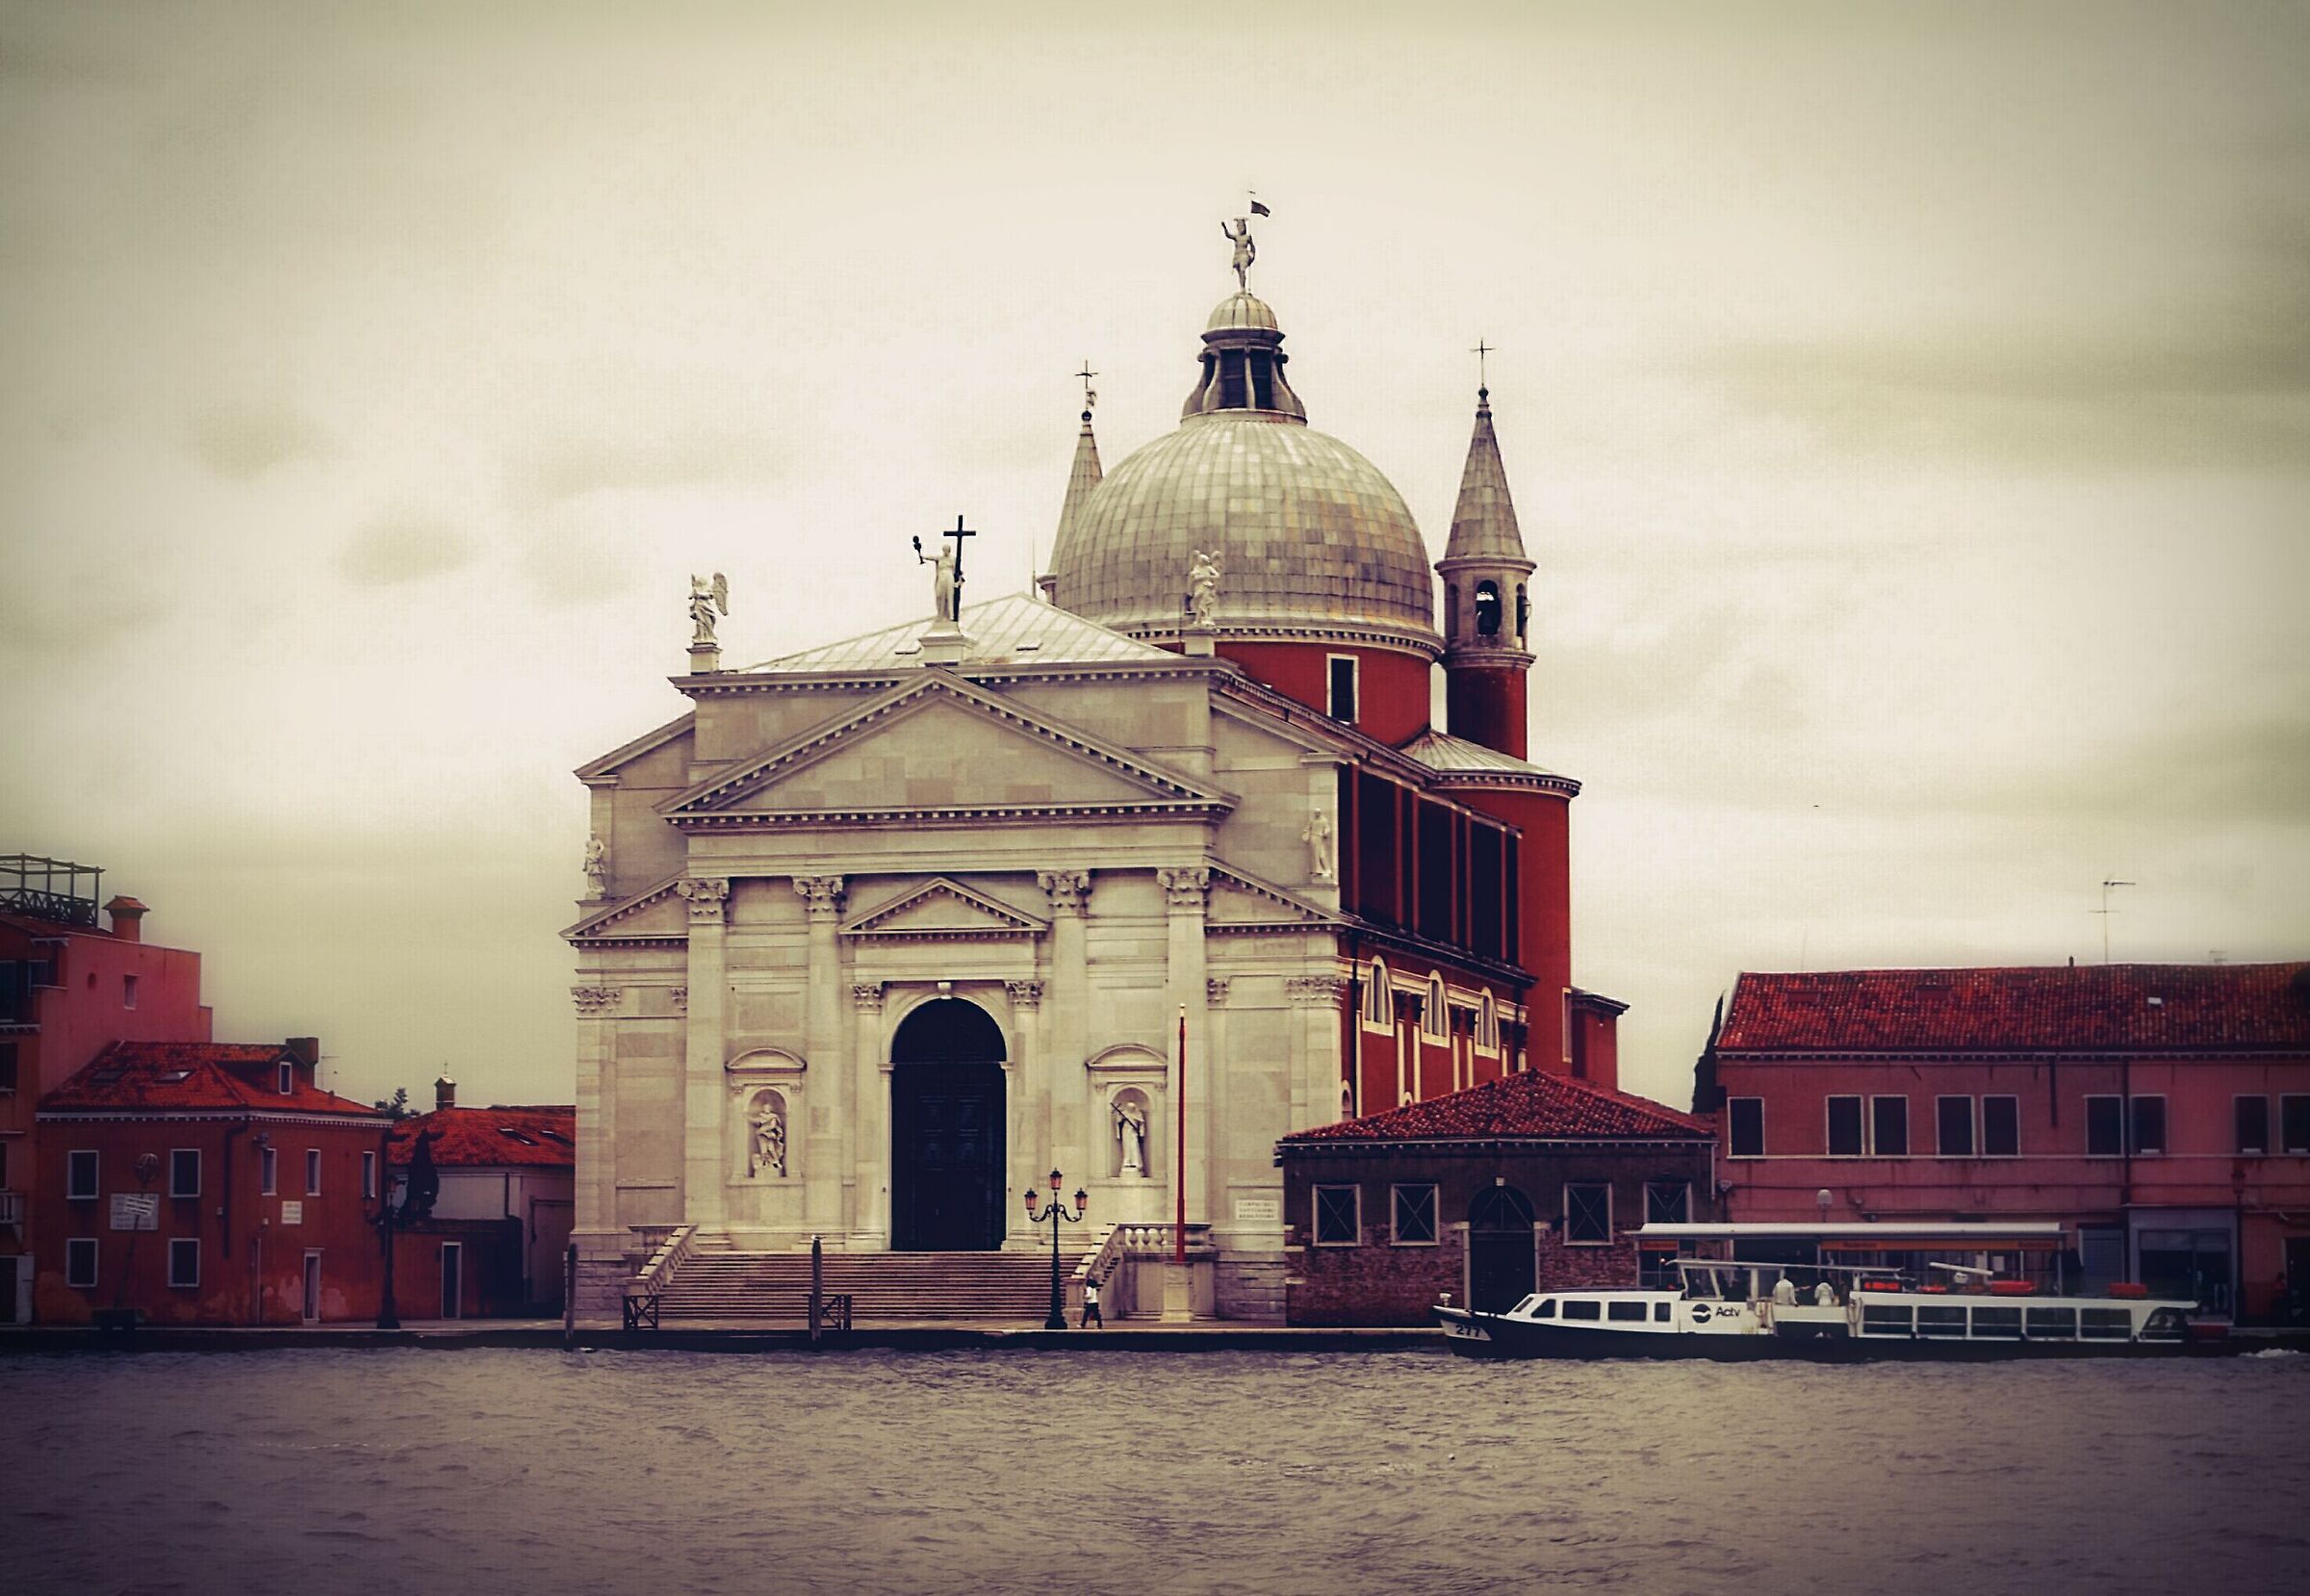 Venezia...